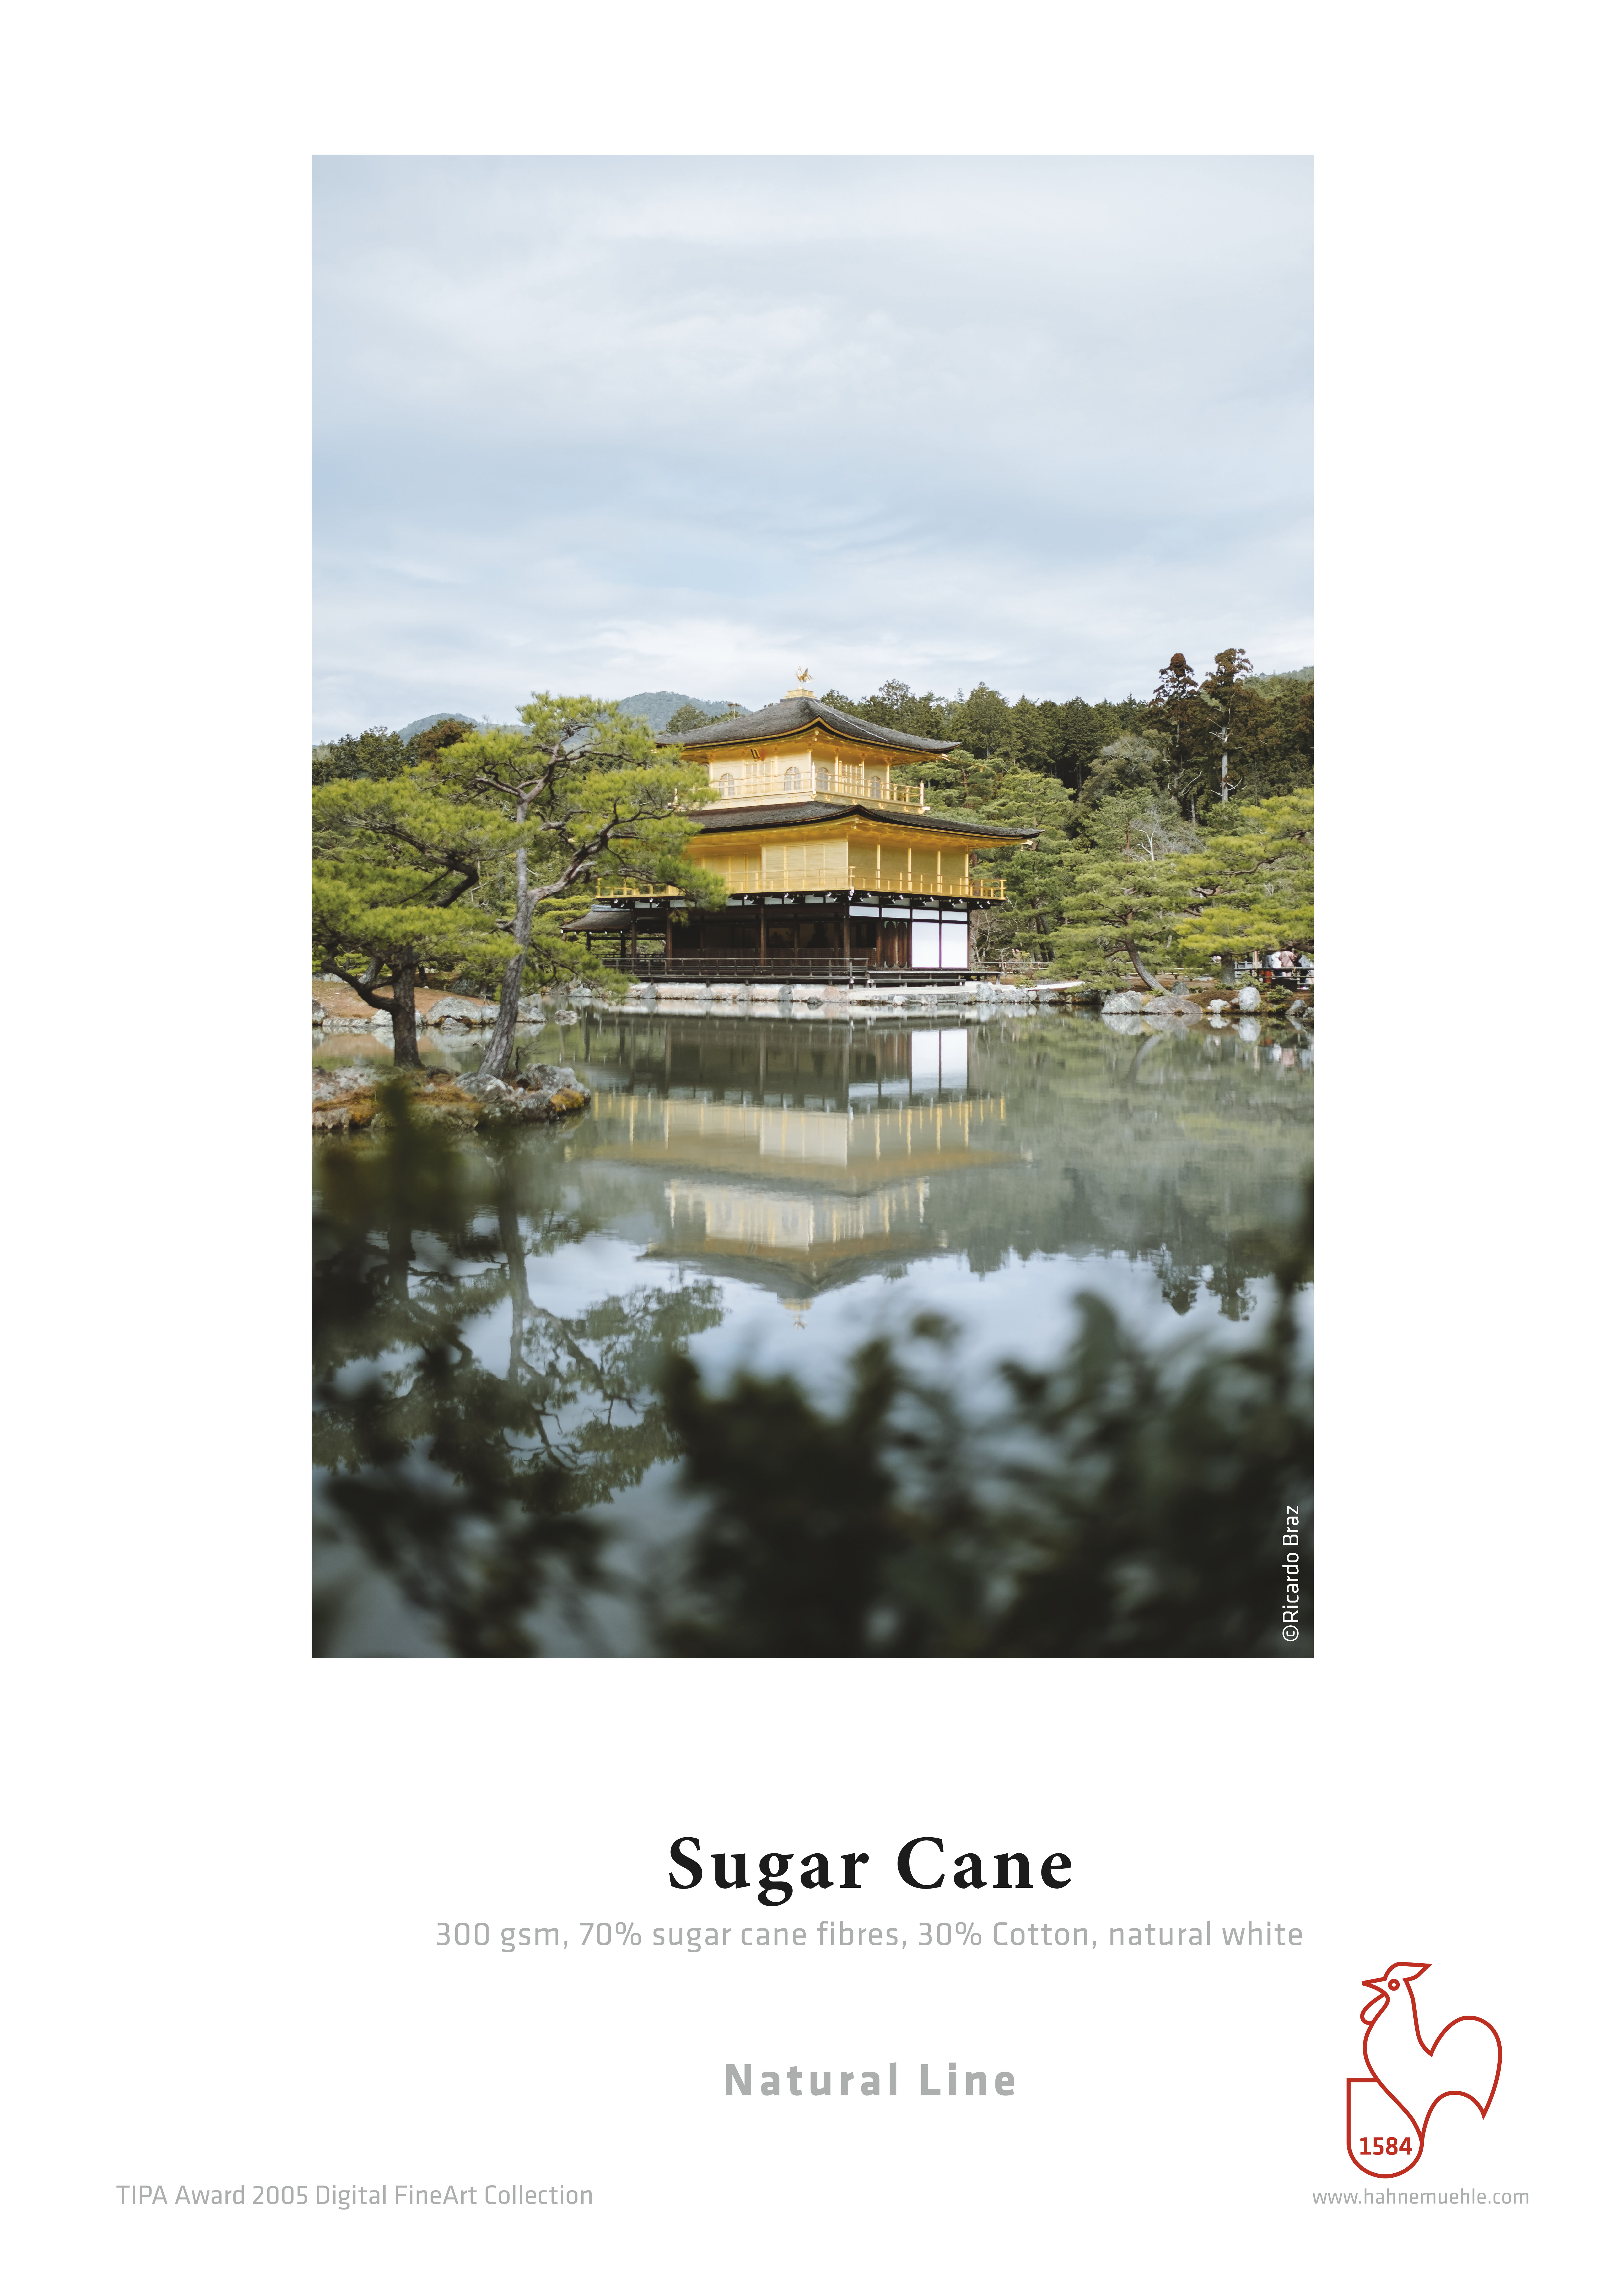 Musterdruck von Sugar Cane. Gedrucktes Foto mit Haus am See